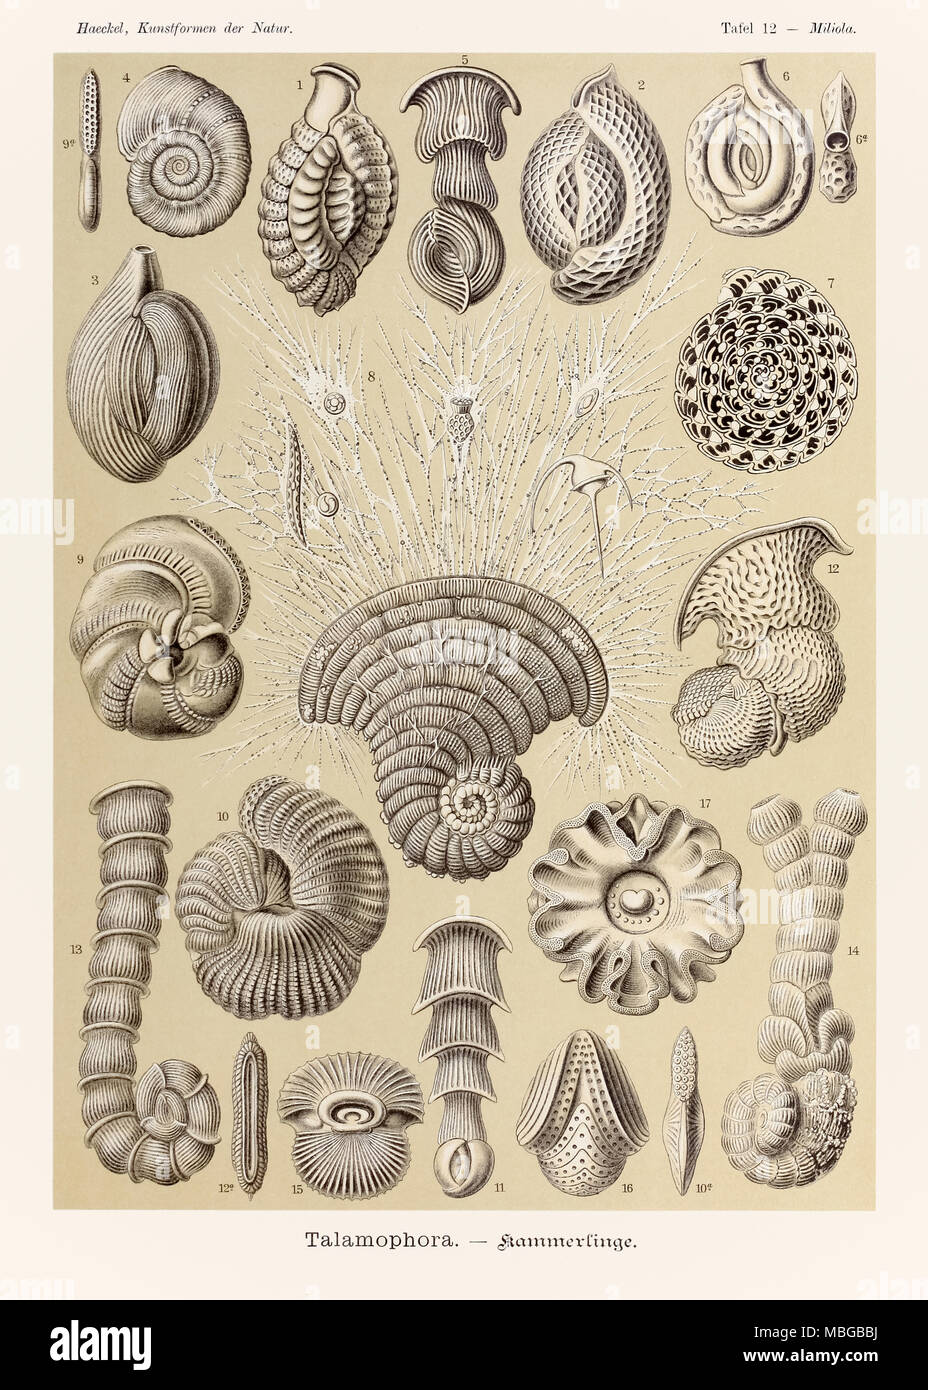 Miliola Talamophora 12 Plaque de 'Kunstformen der Natur' (formes d'art dans la Nature) illustrée par Ernst Haeckel (1834-1919). Voir plus d'informations ci-dessous. Banque D'Images